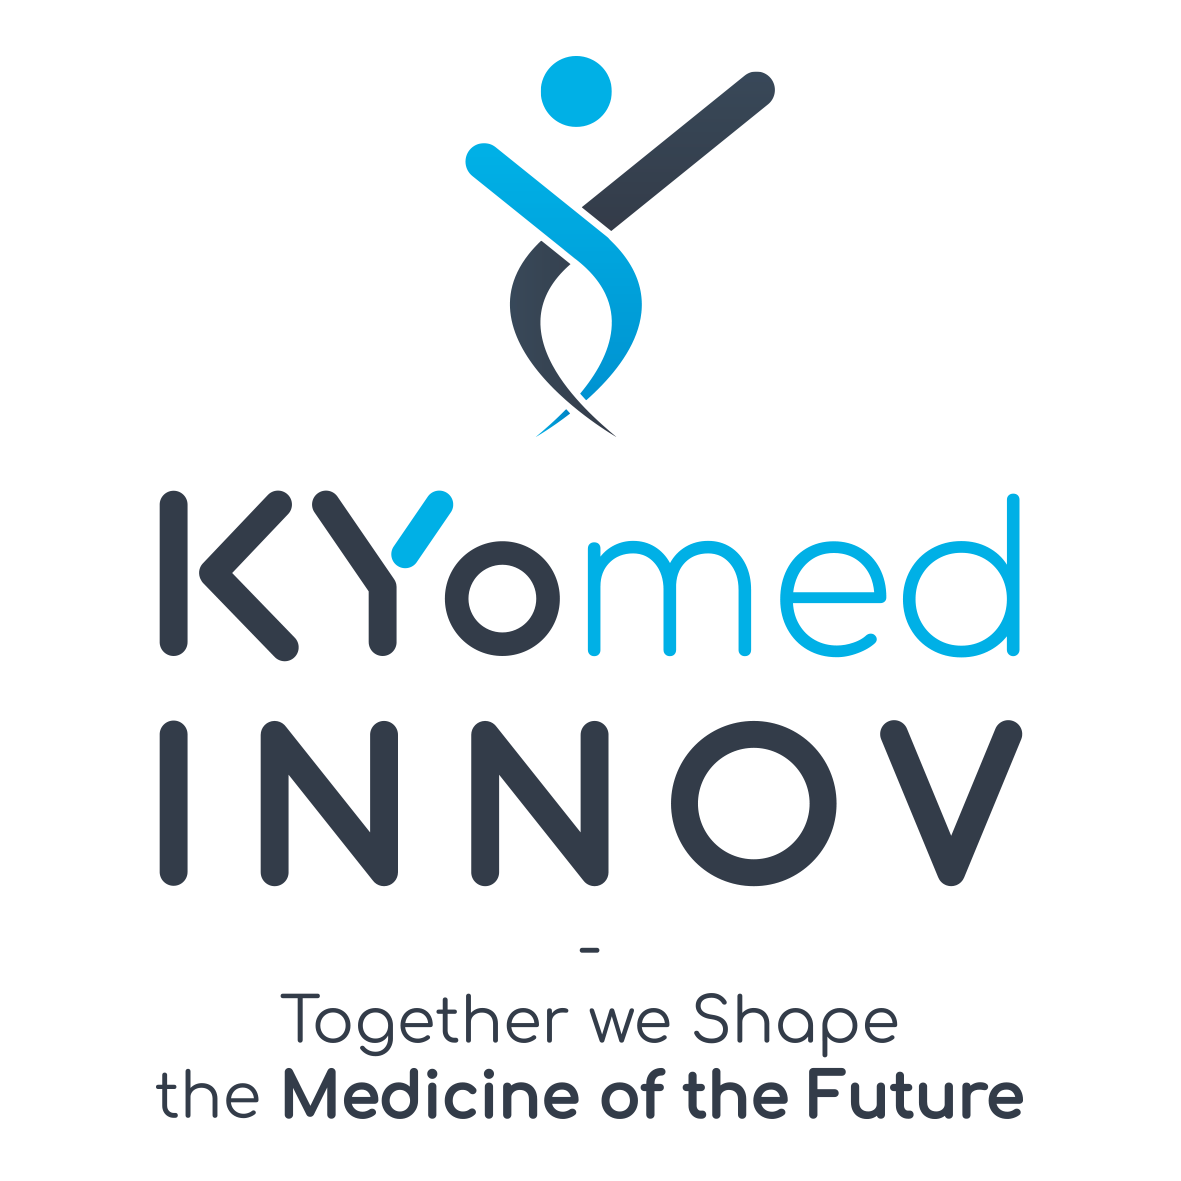 KYomed Innov logo